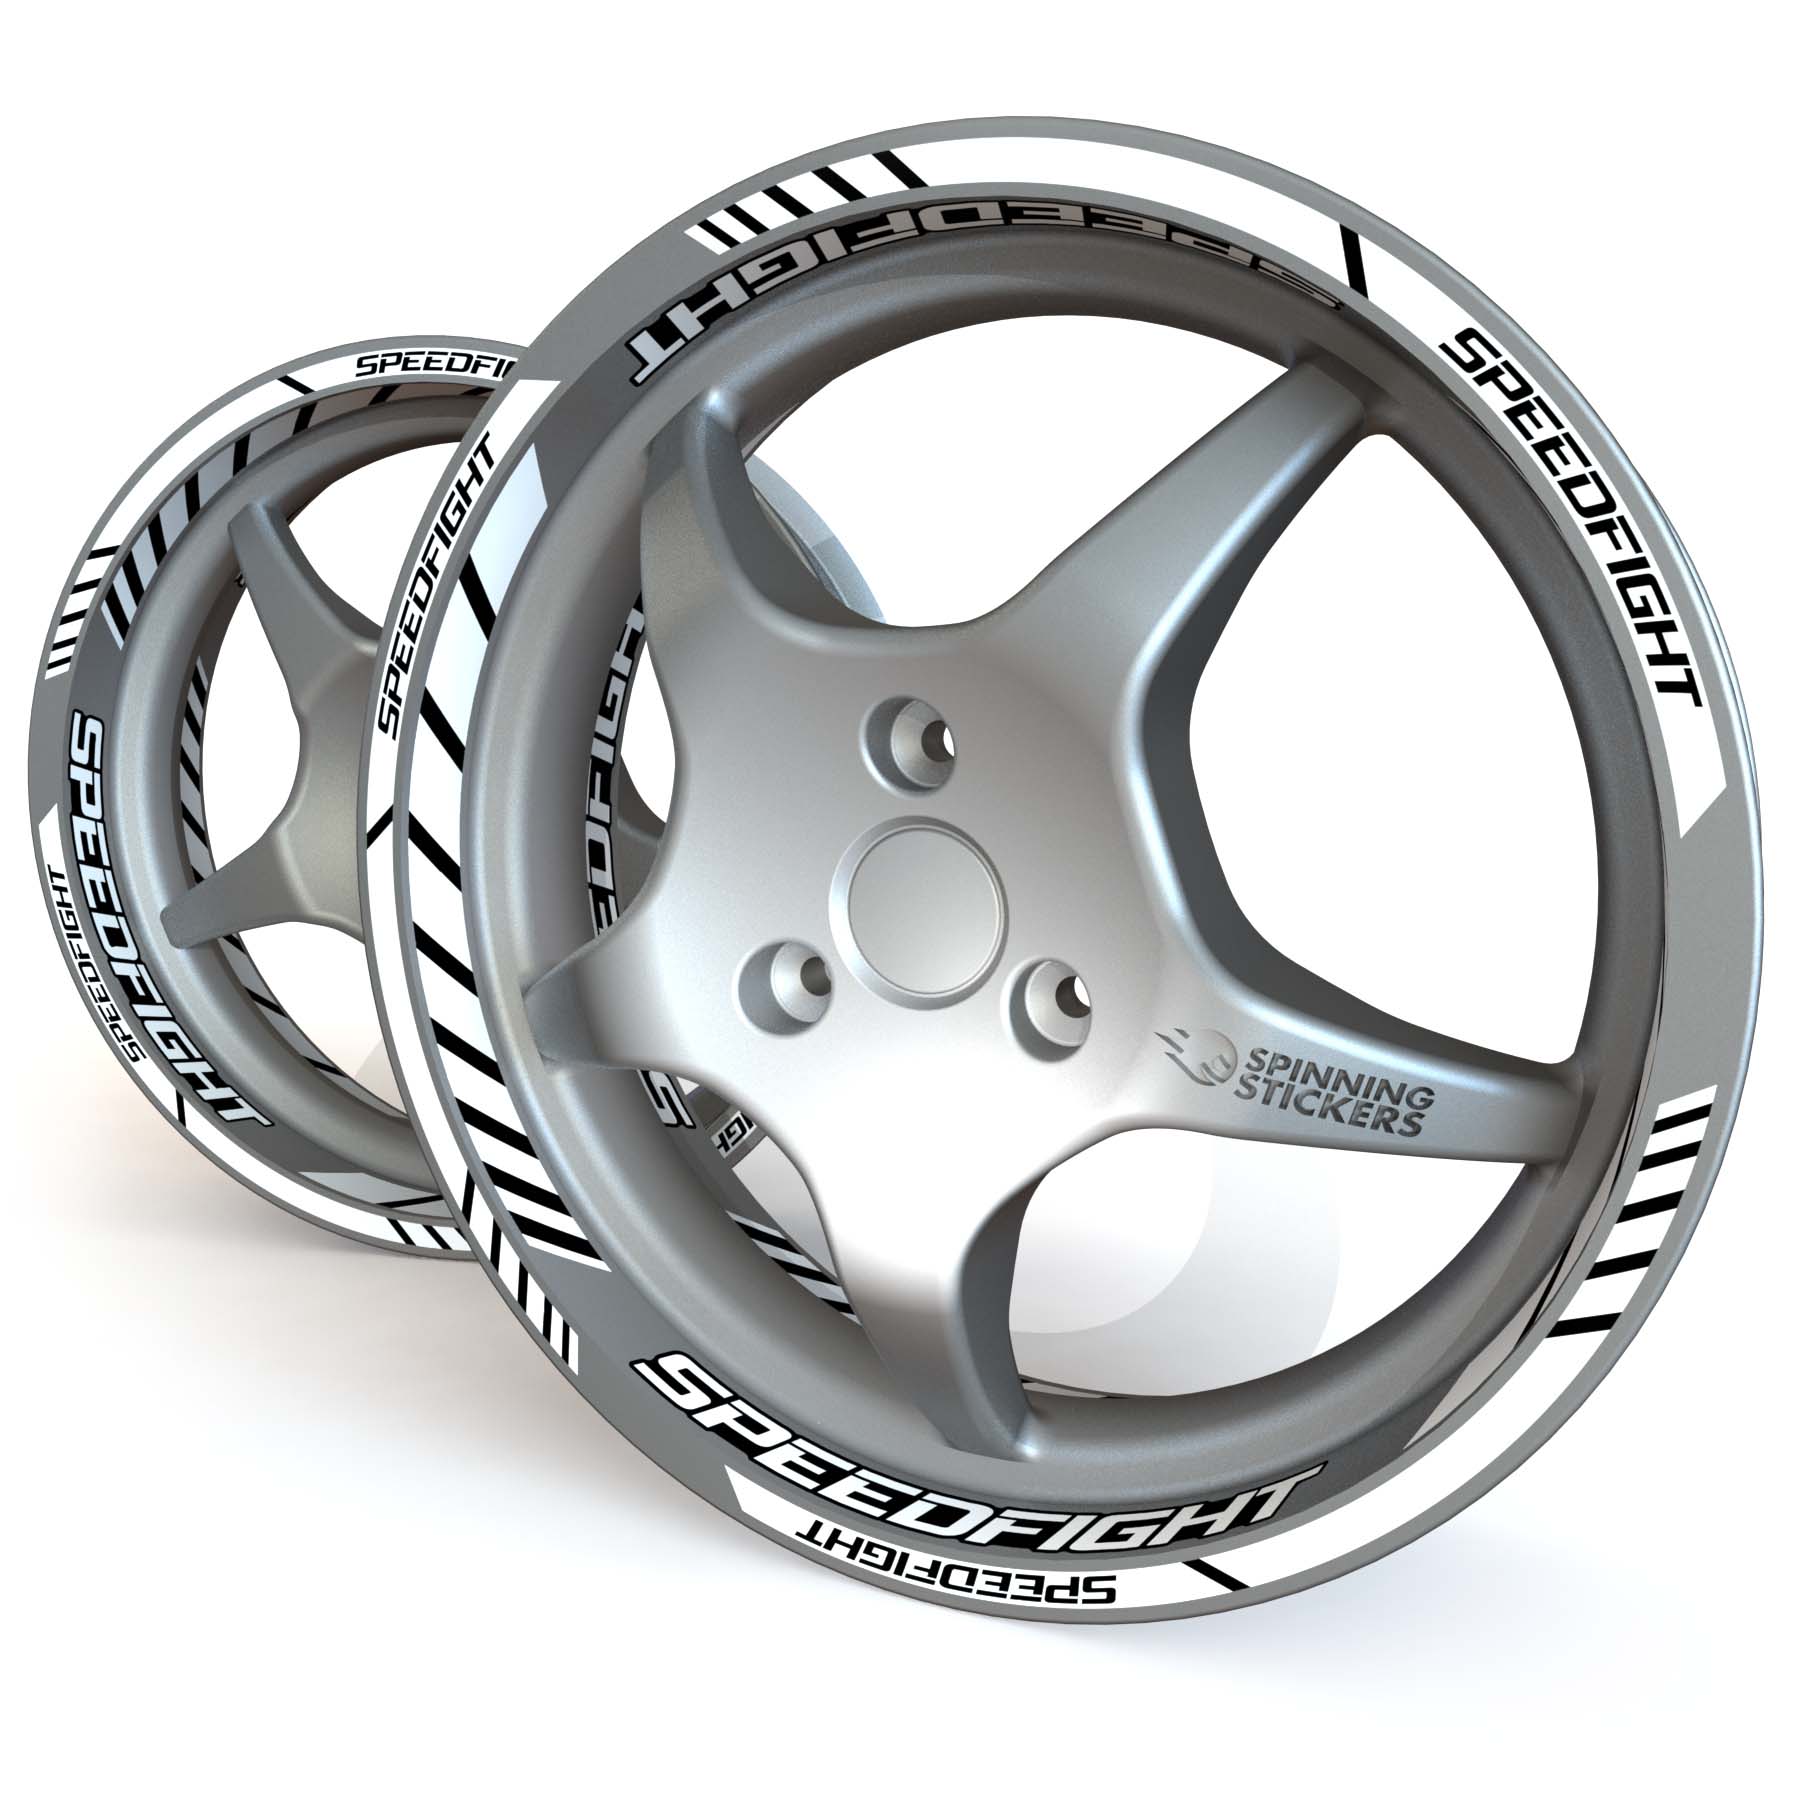 Peugeot Speedfight Wheel Stickers - Plus Design